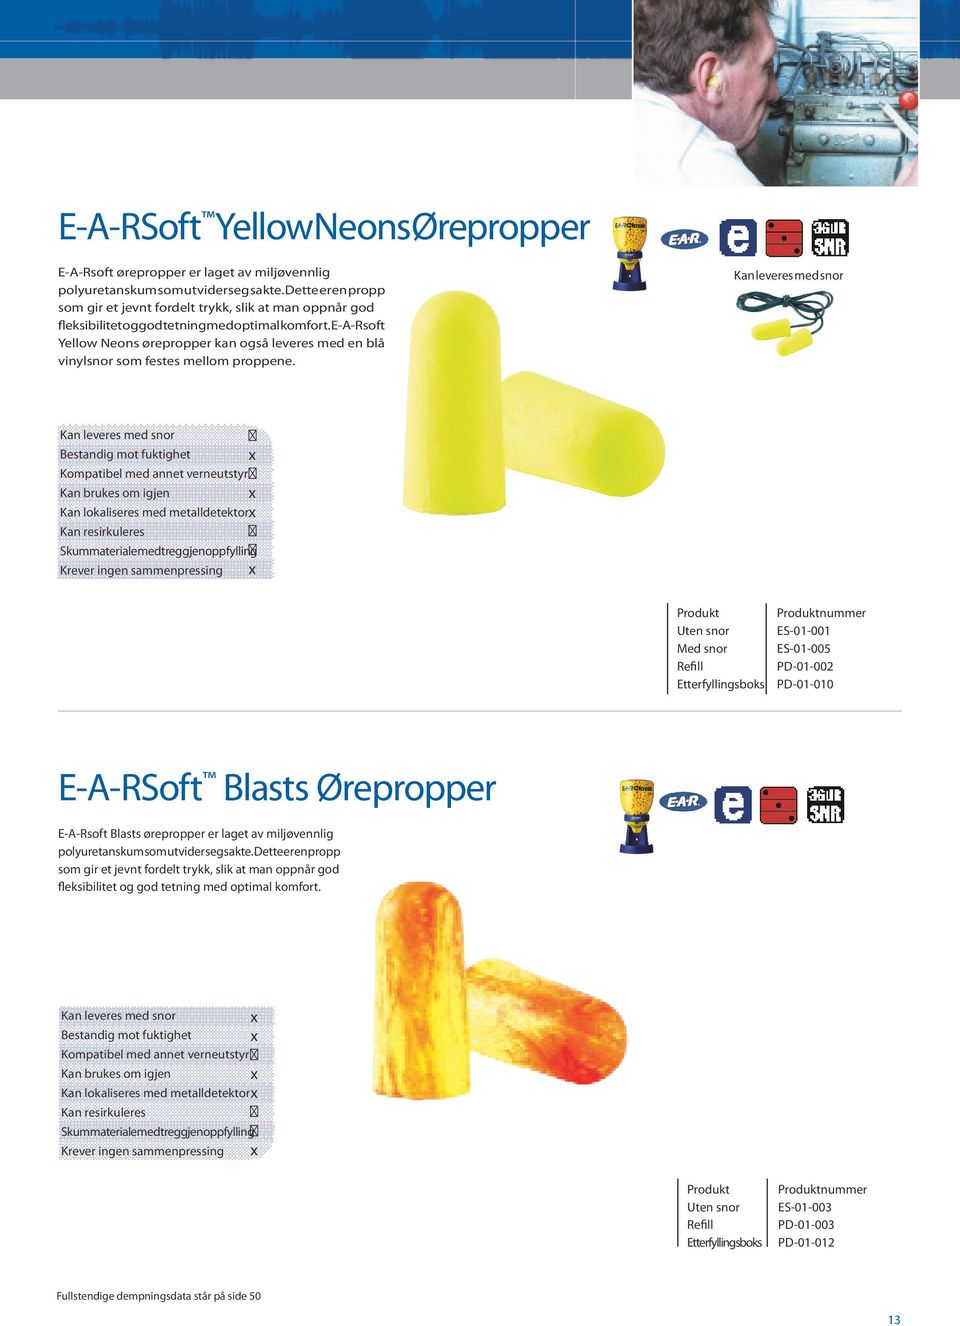 E-A-Rsoft Yellow Neons ørepropper kan også leveres med en blå vinylsnor som festes mellom proppene.